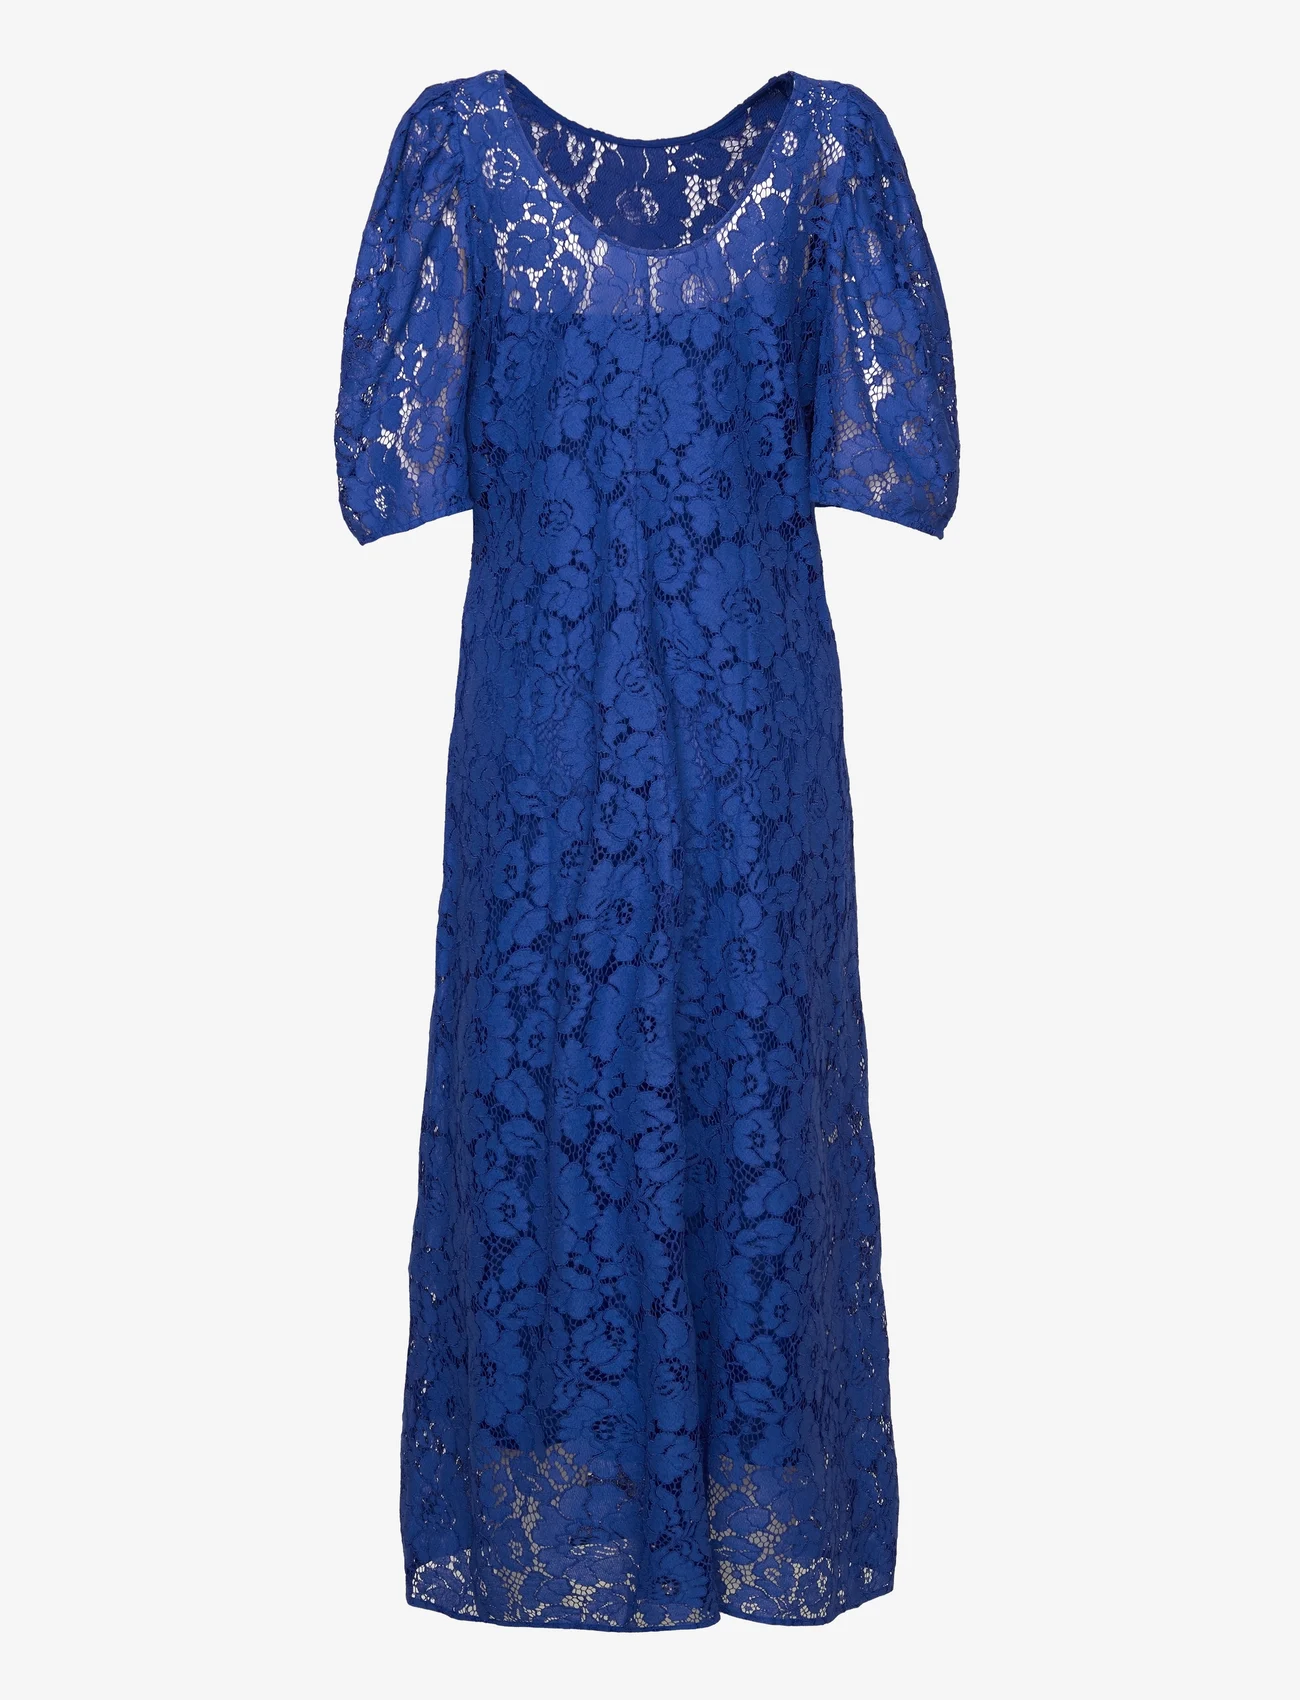 InWear - NabilIW Dress - vasaras kleitas - mazarine blue - 1